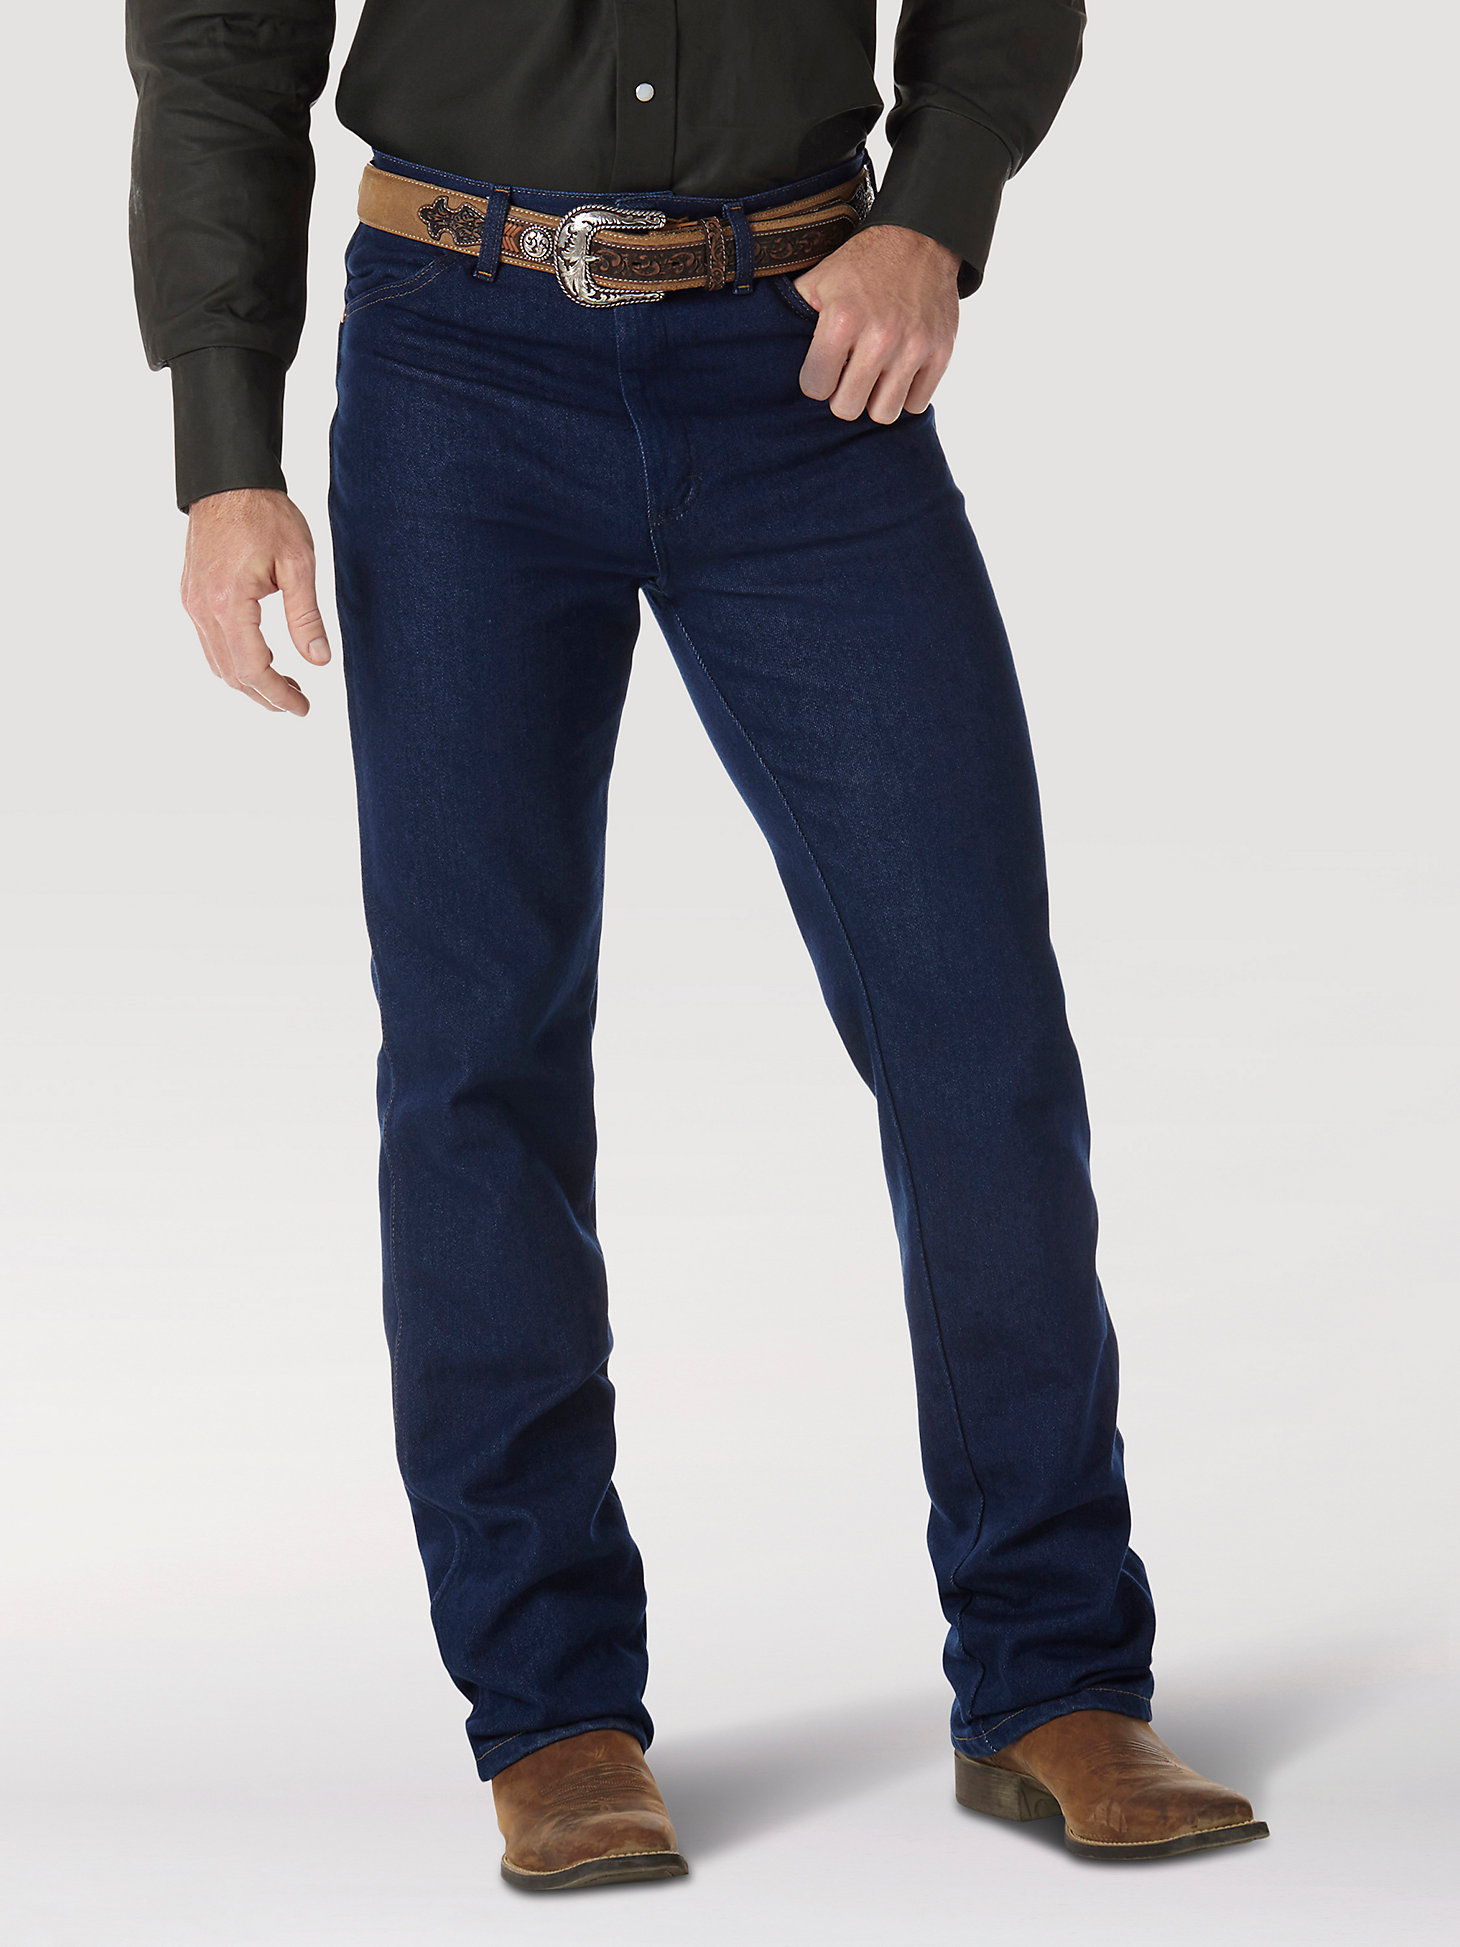 Wrangler® Cowboy Cut® Stretch Slim Fit Jean